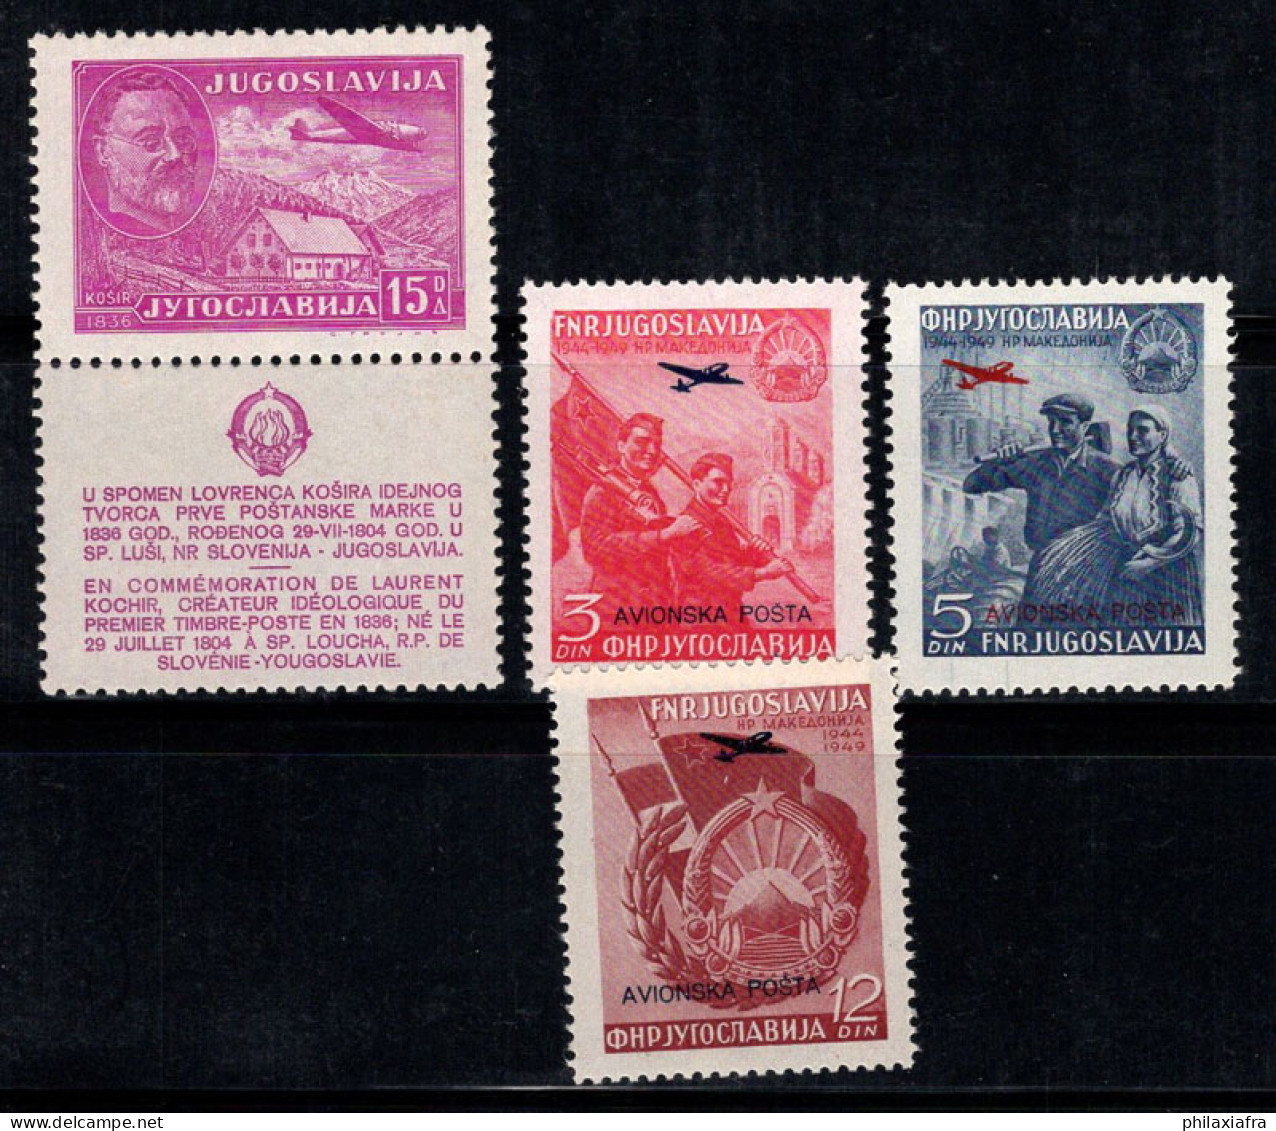 Yougoslavie 1948 Mi. 556, 575-577 Neuf ** 100% Poste Aérienne Kosir, AVIONSKA - Luftpost